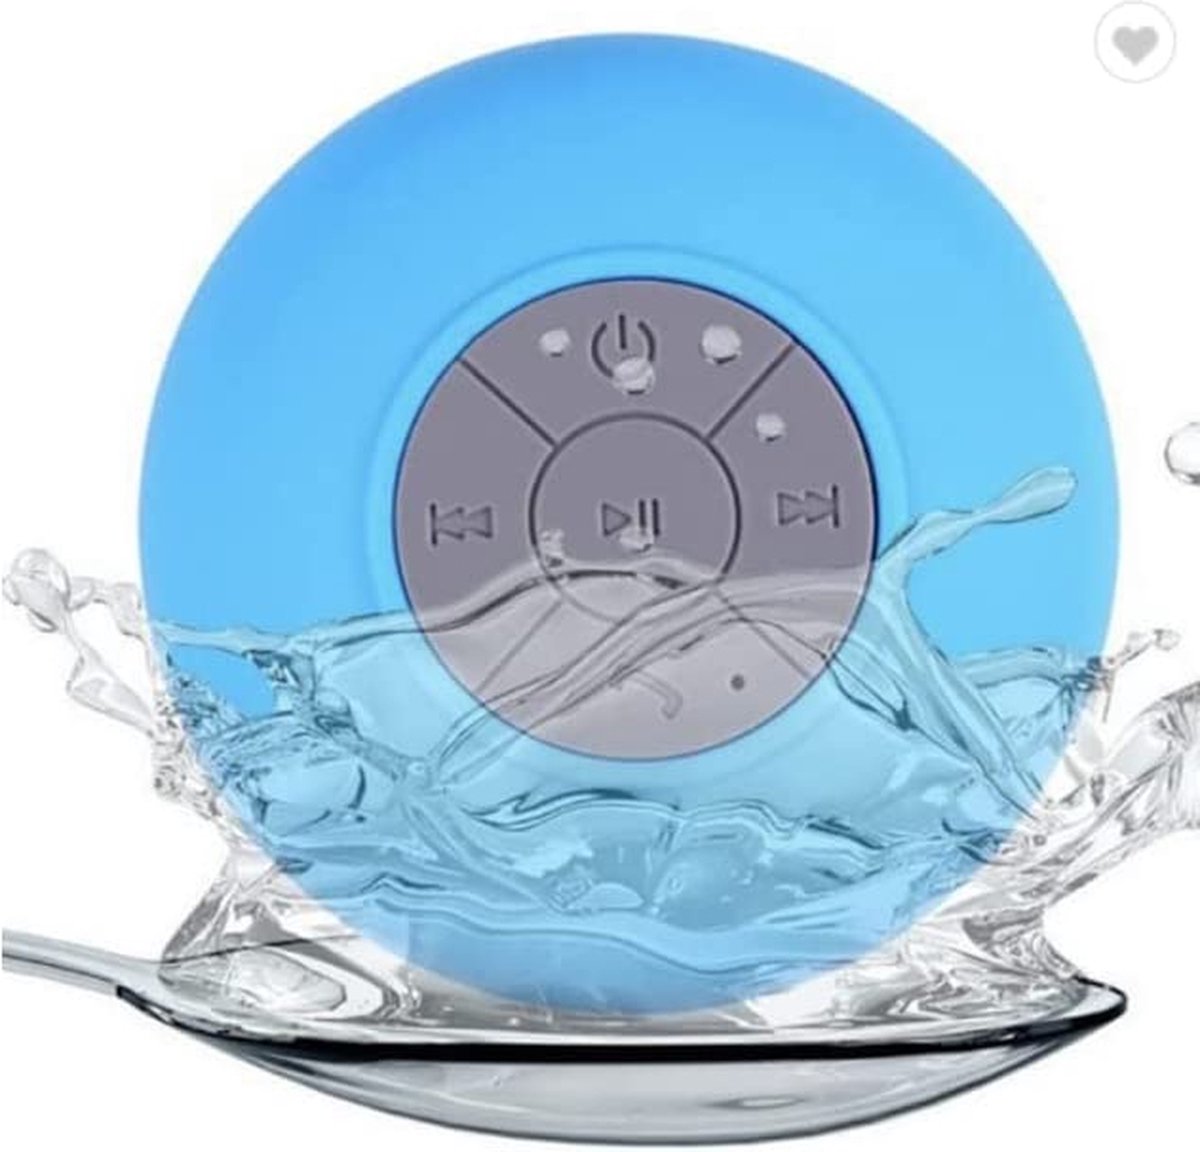 Bluetooth Waterbestendige Douche/Bad Mp3 Speaker/Radio - Blauw - Luister naar muziek onder de douche - Waterdichte - Draadloze verbinding